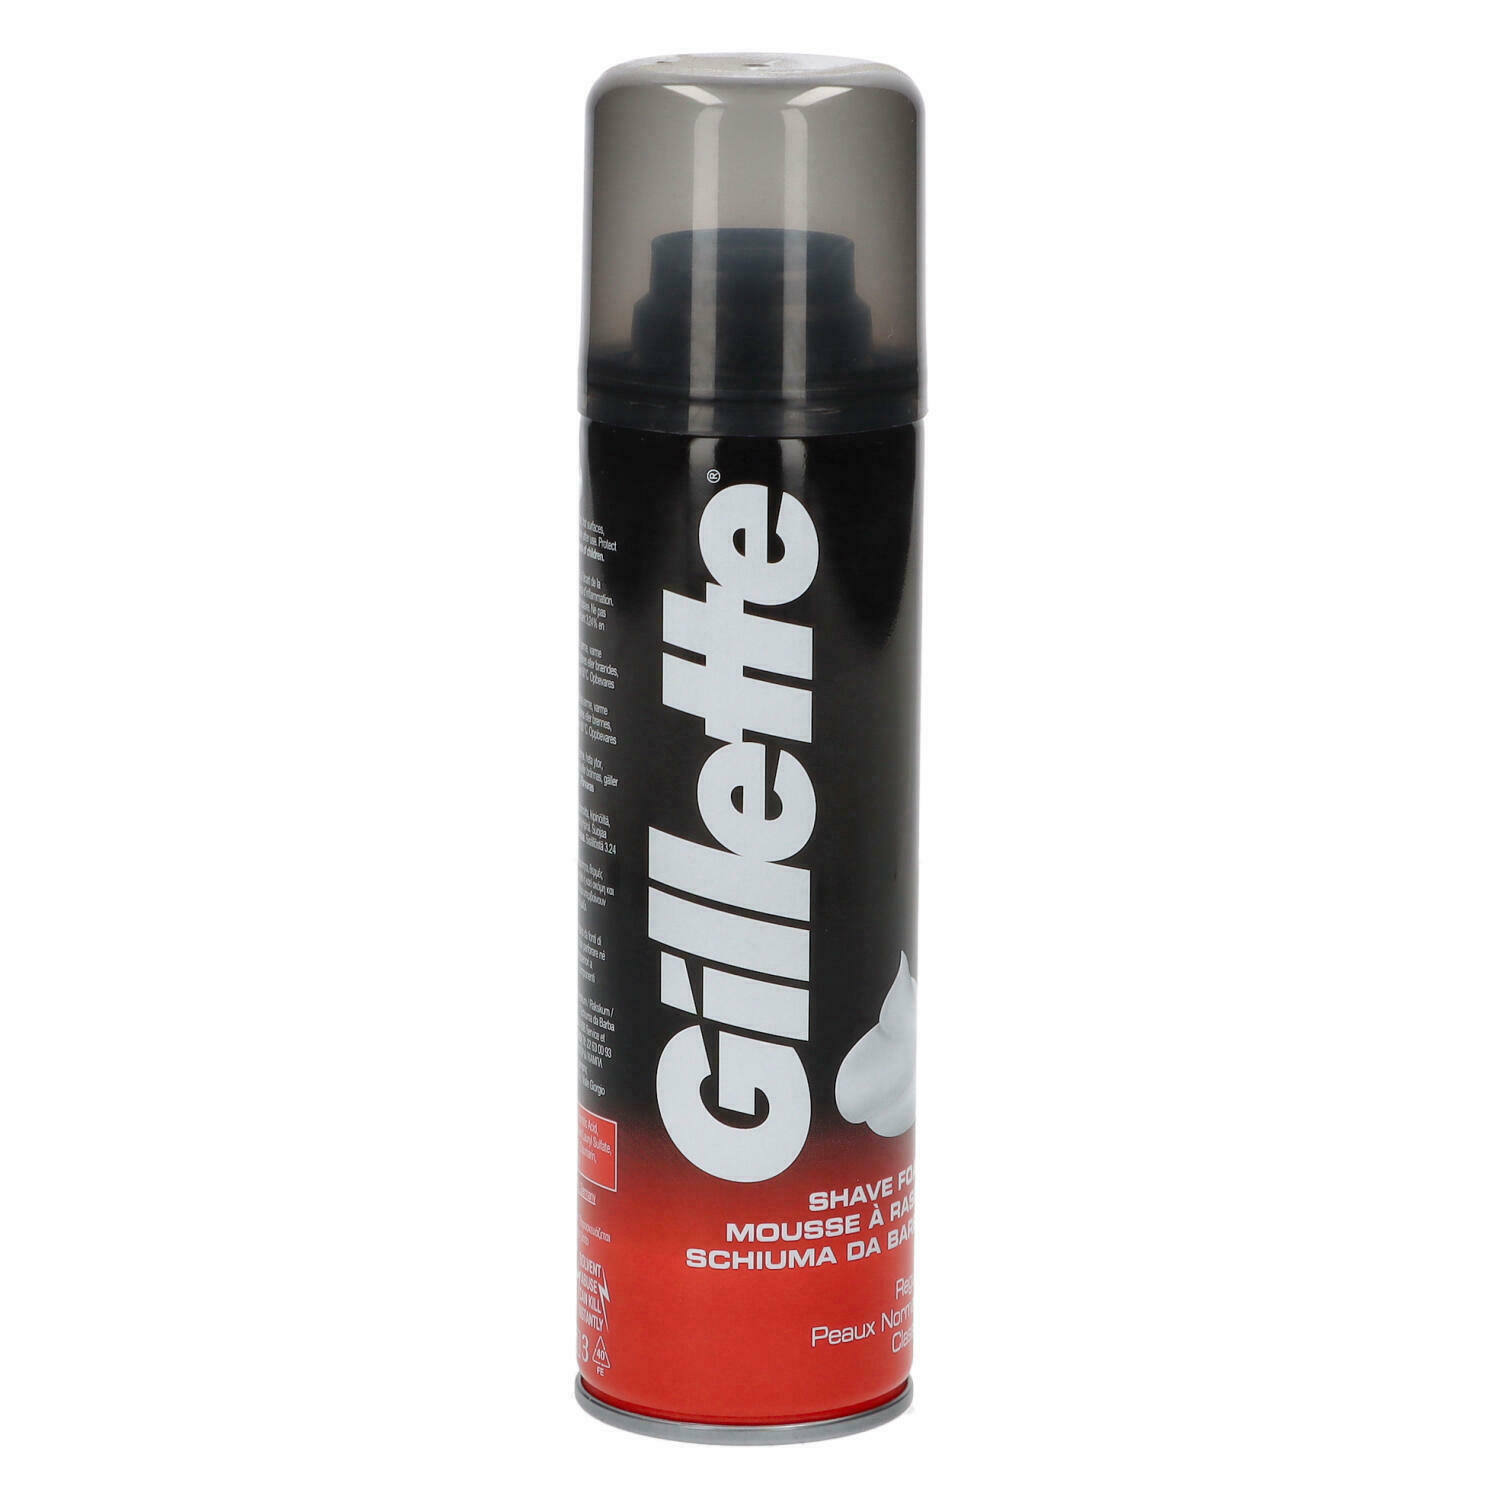 Gillette Classic Men's Shaving Foam - Regular, 200ml